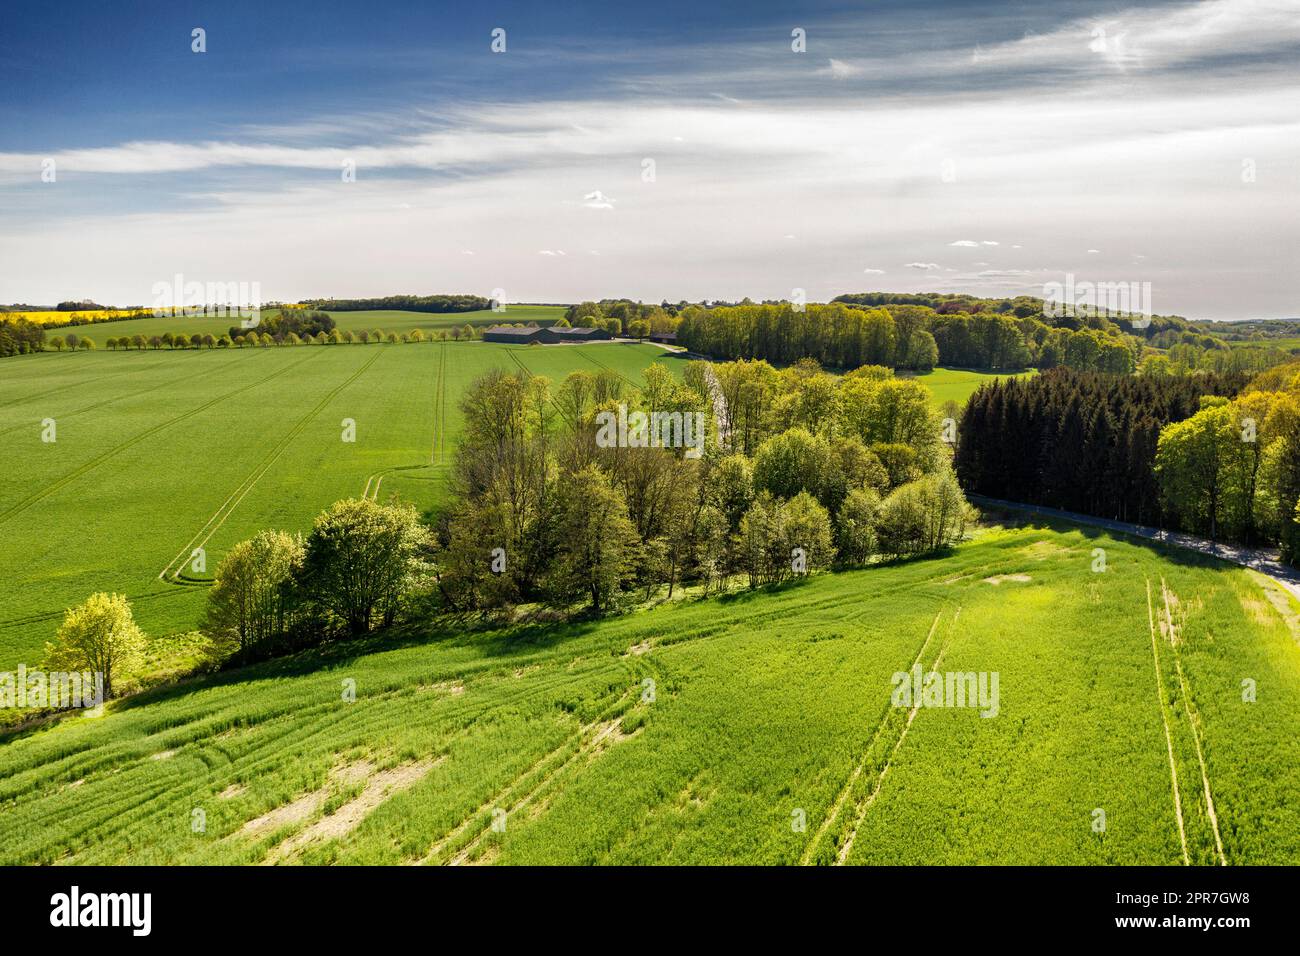 Lussureggiante e verde campagna dello Jutland, Danimarca, con spazio coperto. Agricoltura sostenibile e biologica, paesaggio rurale di erba tranquilla, cespugli e alberi. Tranquillo bosco con rilassanti e rilassanti vedute panoramiche Foto Stock